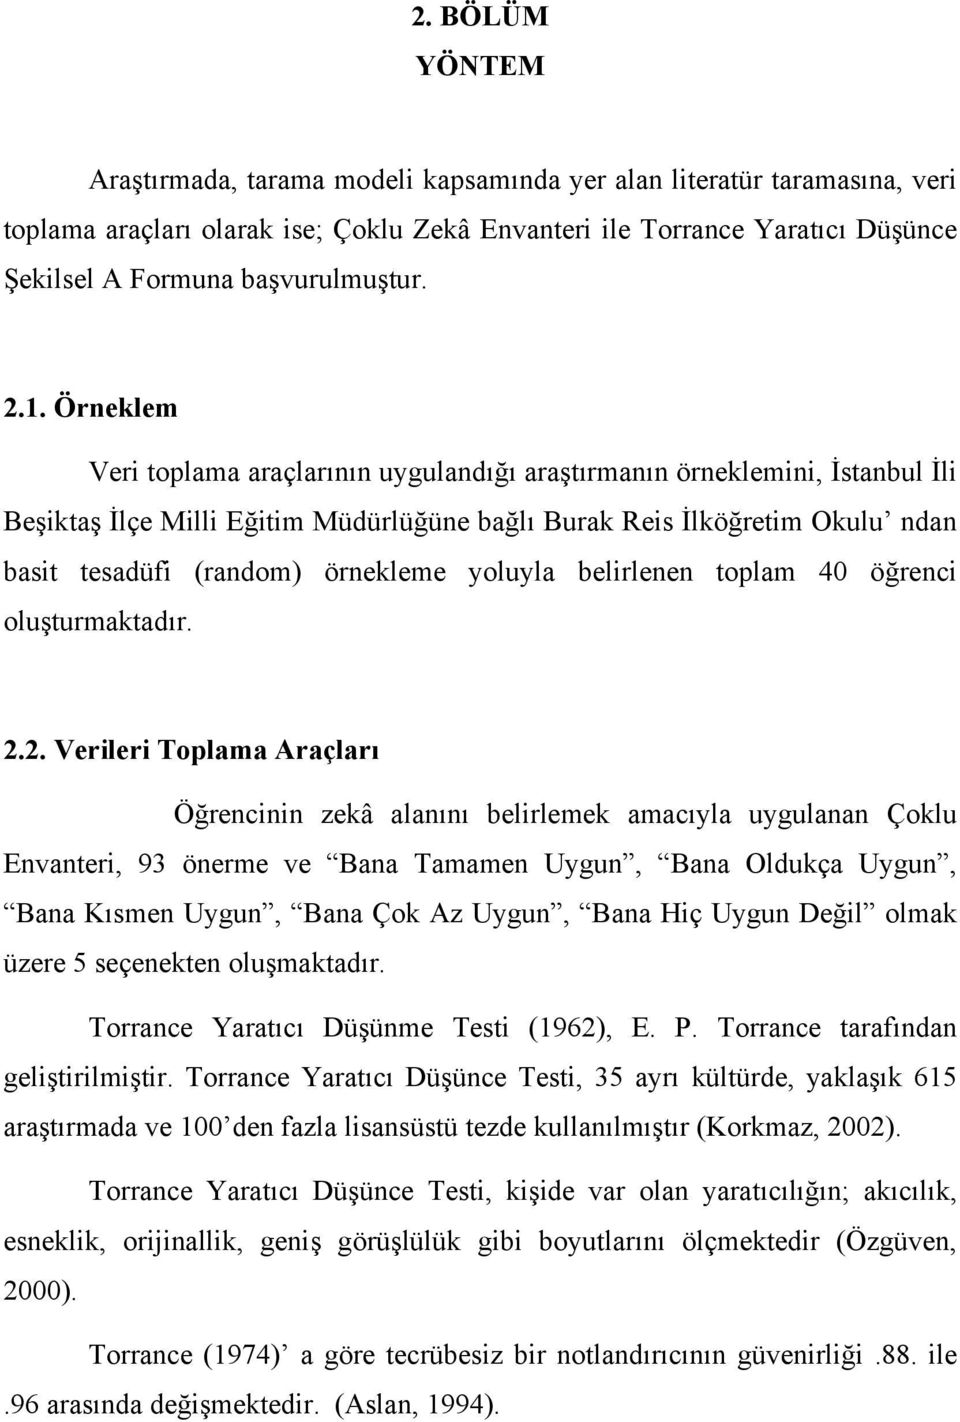 Örneklem Veri toplama araçlarının uygulandığı araştırmanın örneklemini, İstanbul İli Beşiktaş İlçe Milli Eğitim Müdürlüğüne bağlı Burak Reis İlköğretim Okulu ndan basit tesadüfi (random) örnekleme